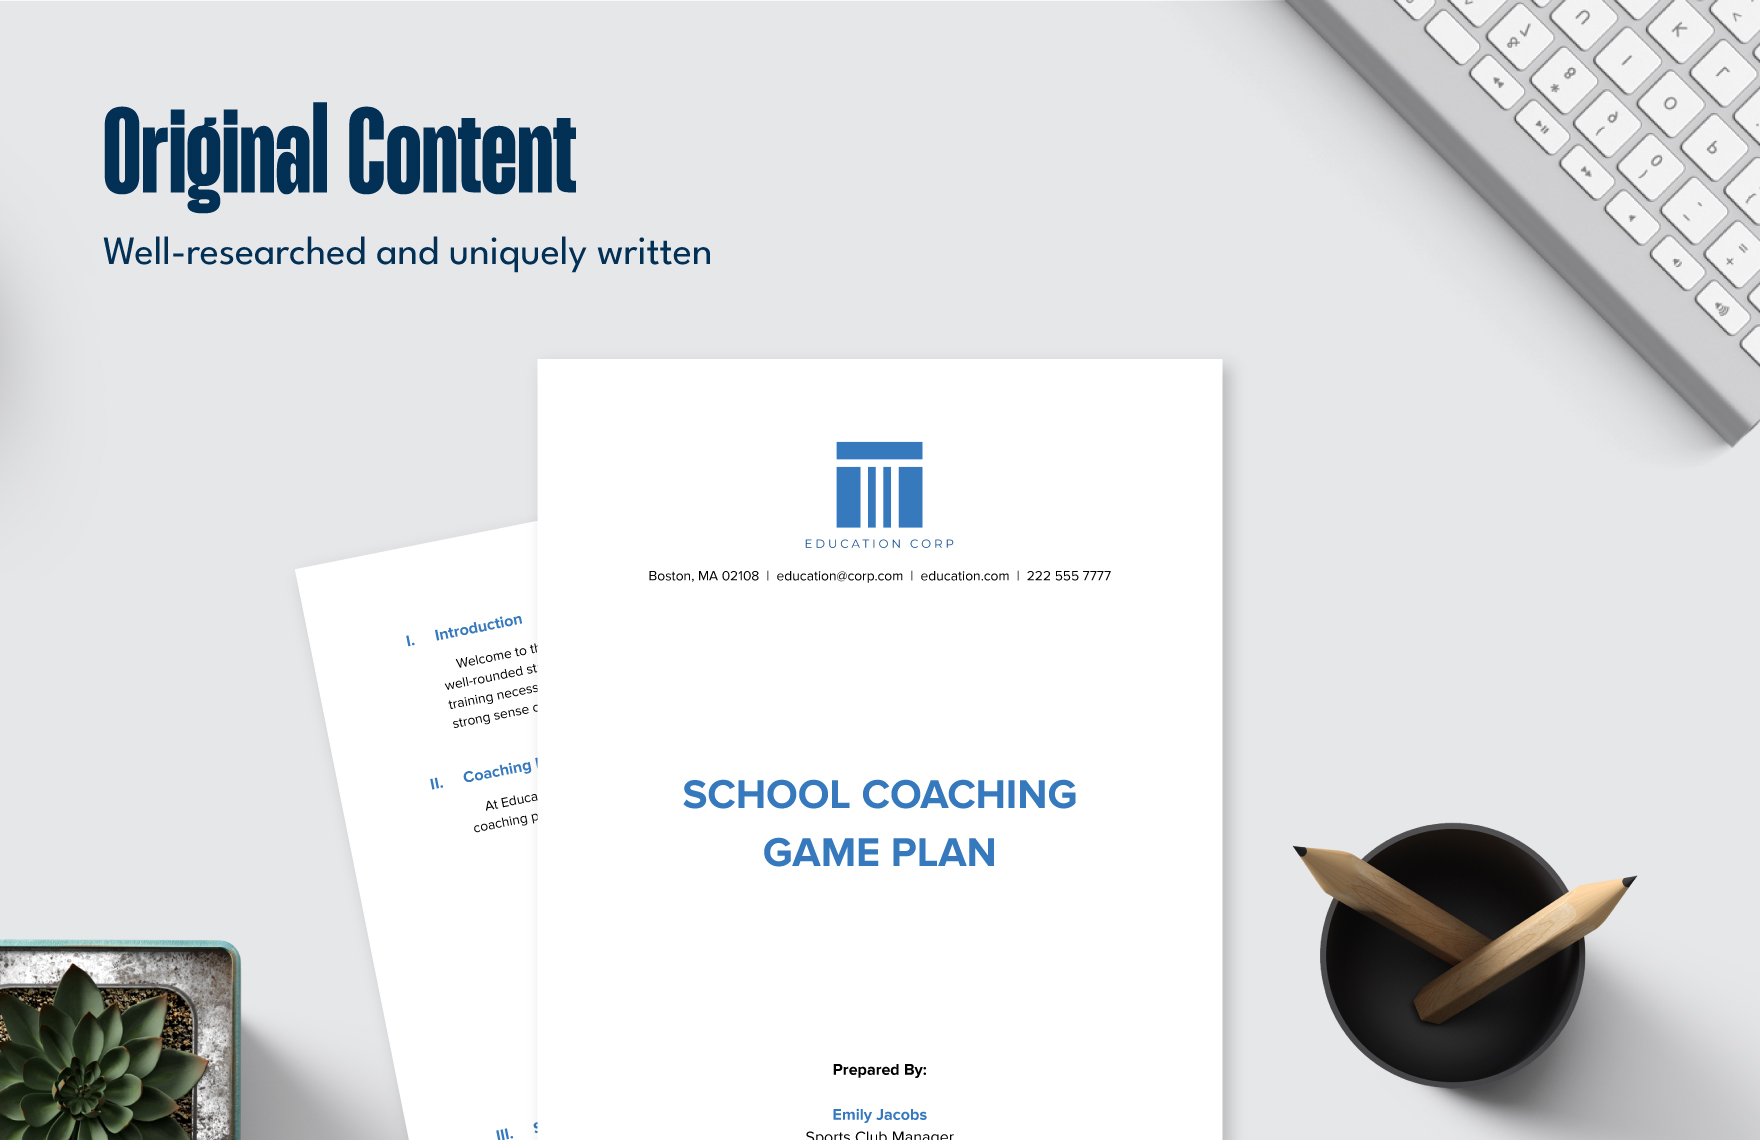 10 Education Coaches Management Template Bundle